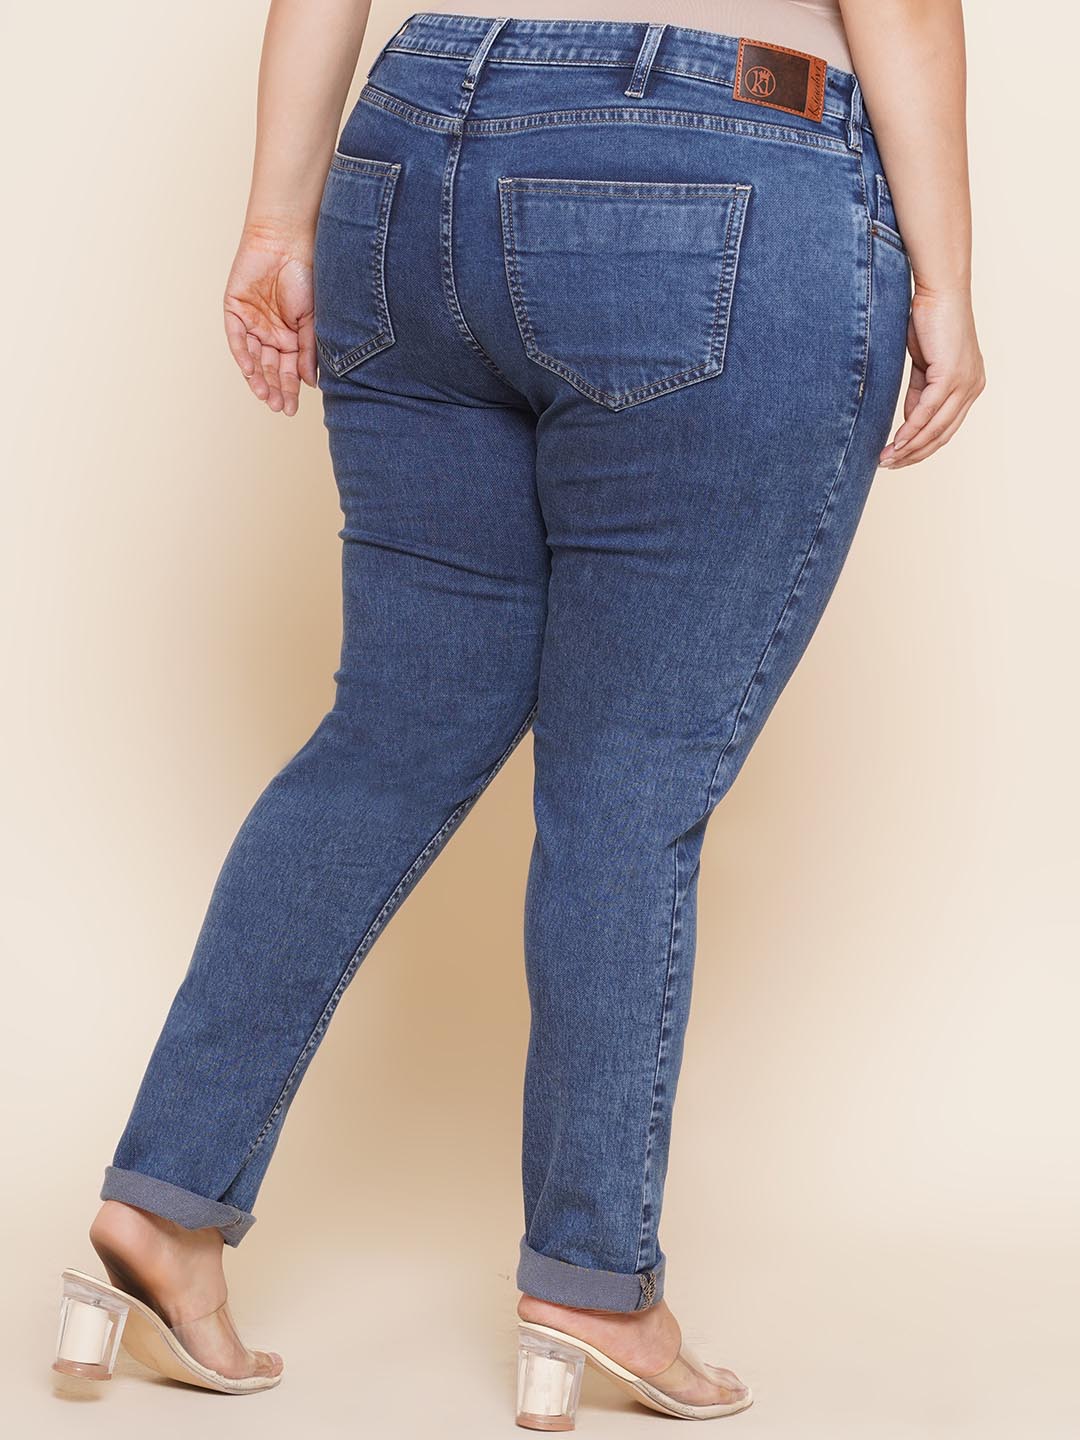 bottomwear_kiaahvi/jeans/KIJ6009/kij6009-5.jpg